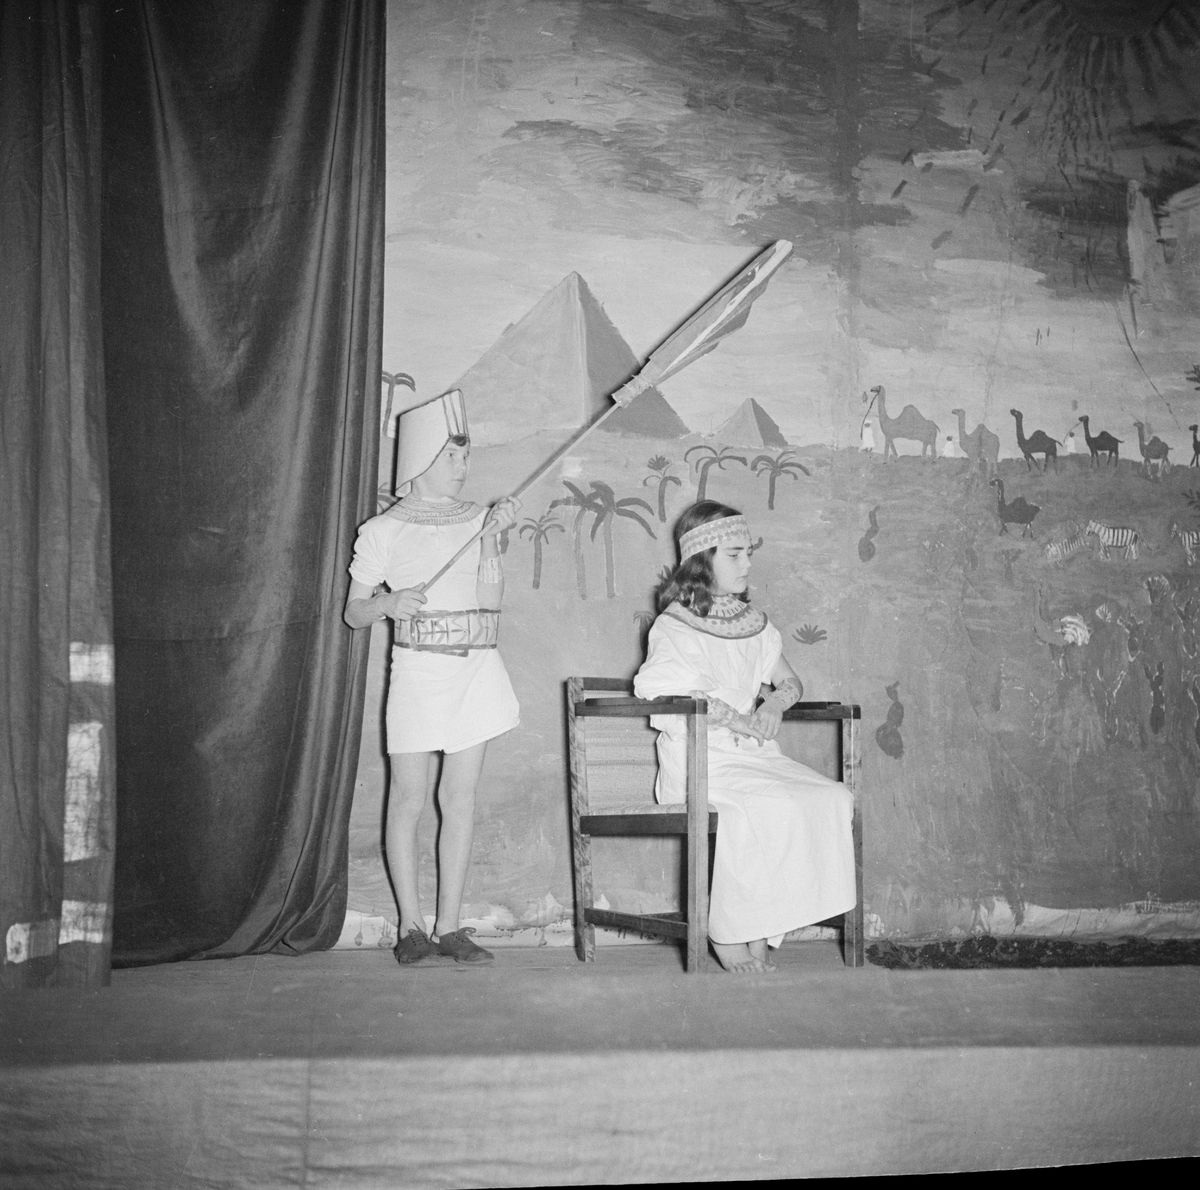 Folkskoleseminariet, "Josef i Egypten", Uppsala 1947